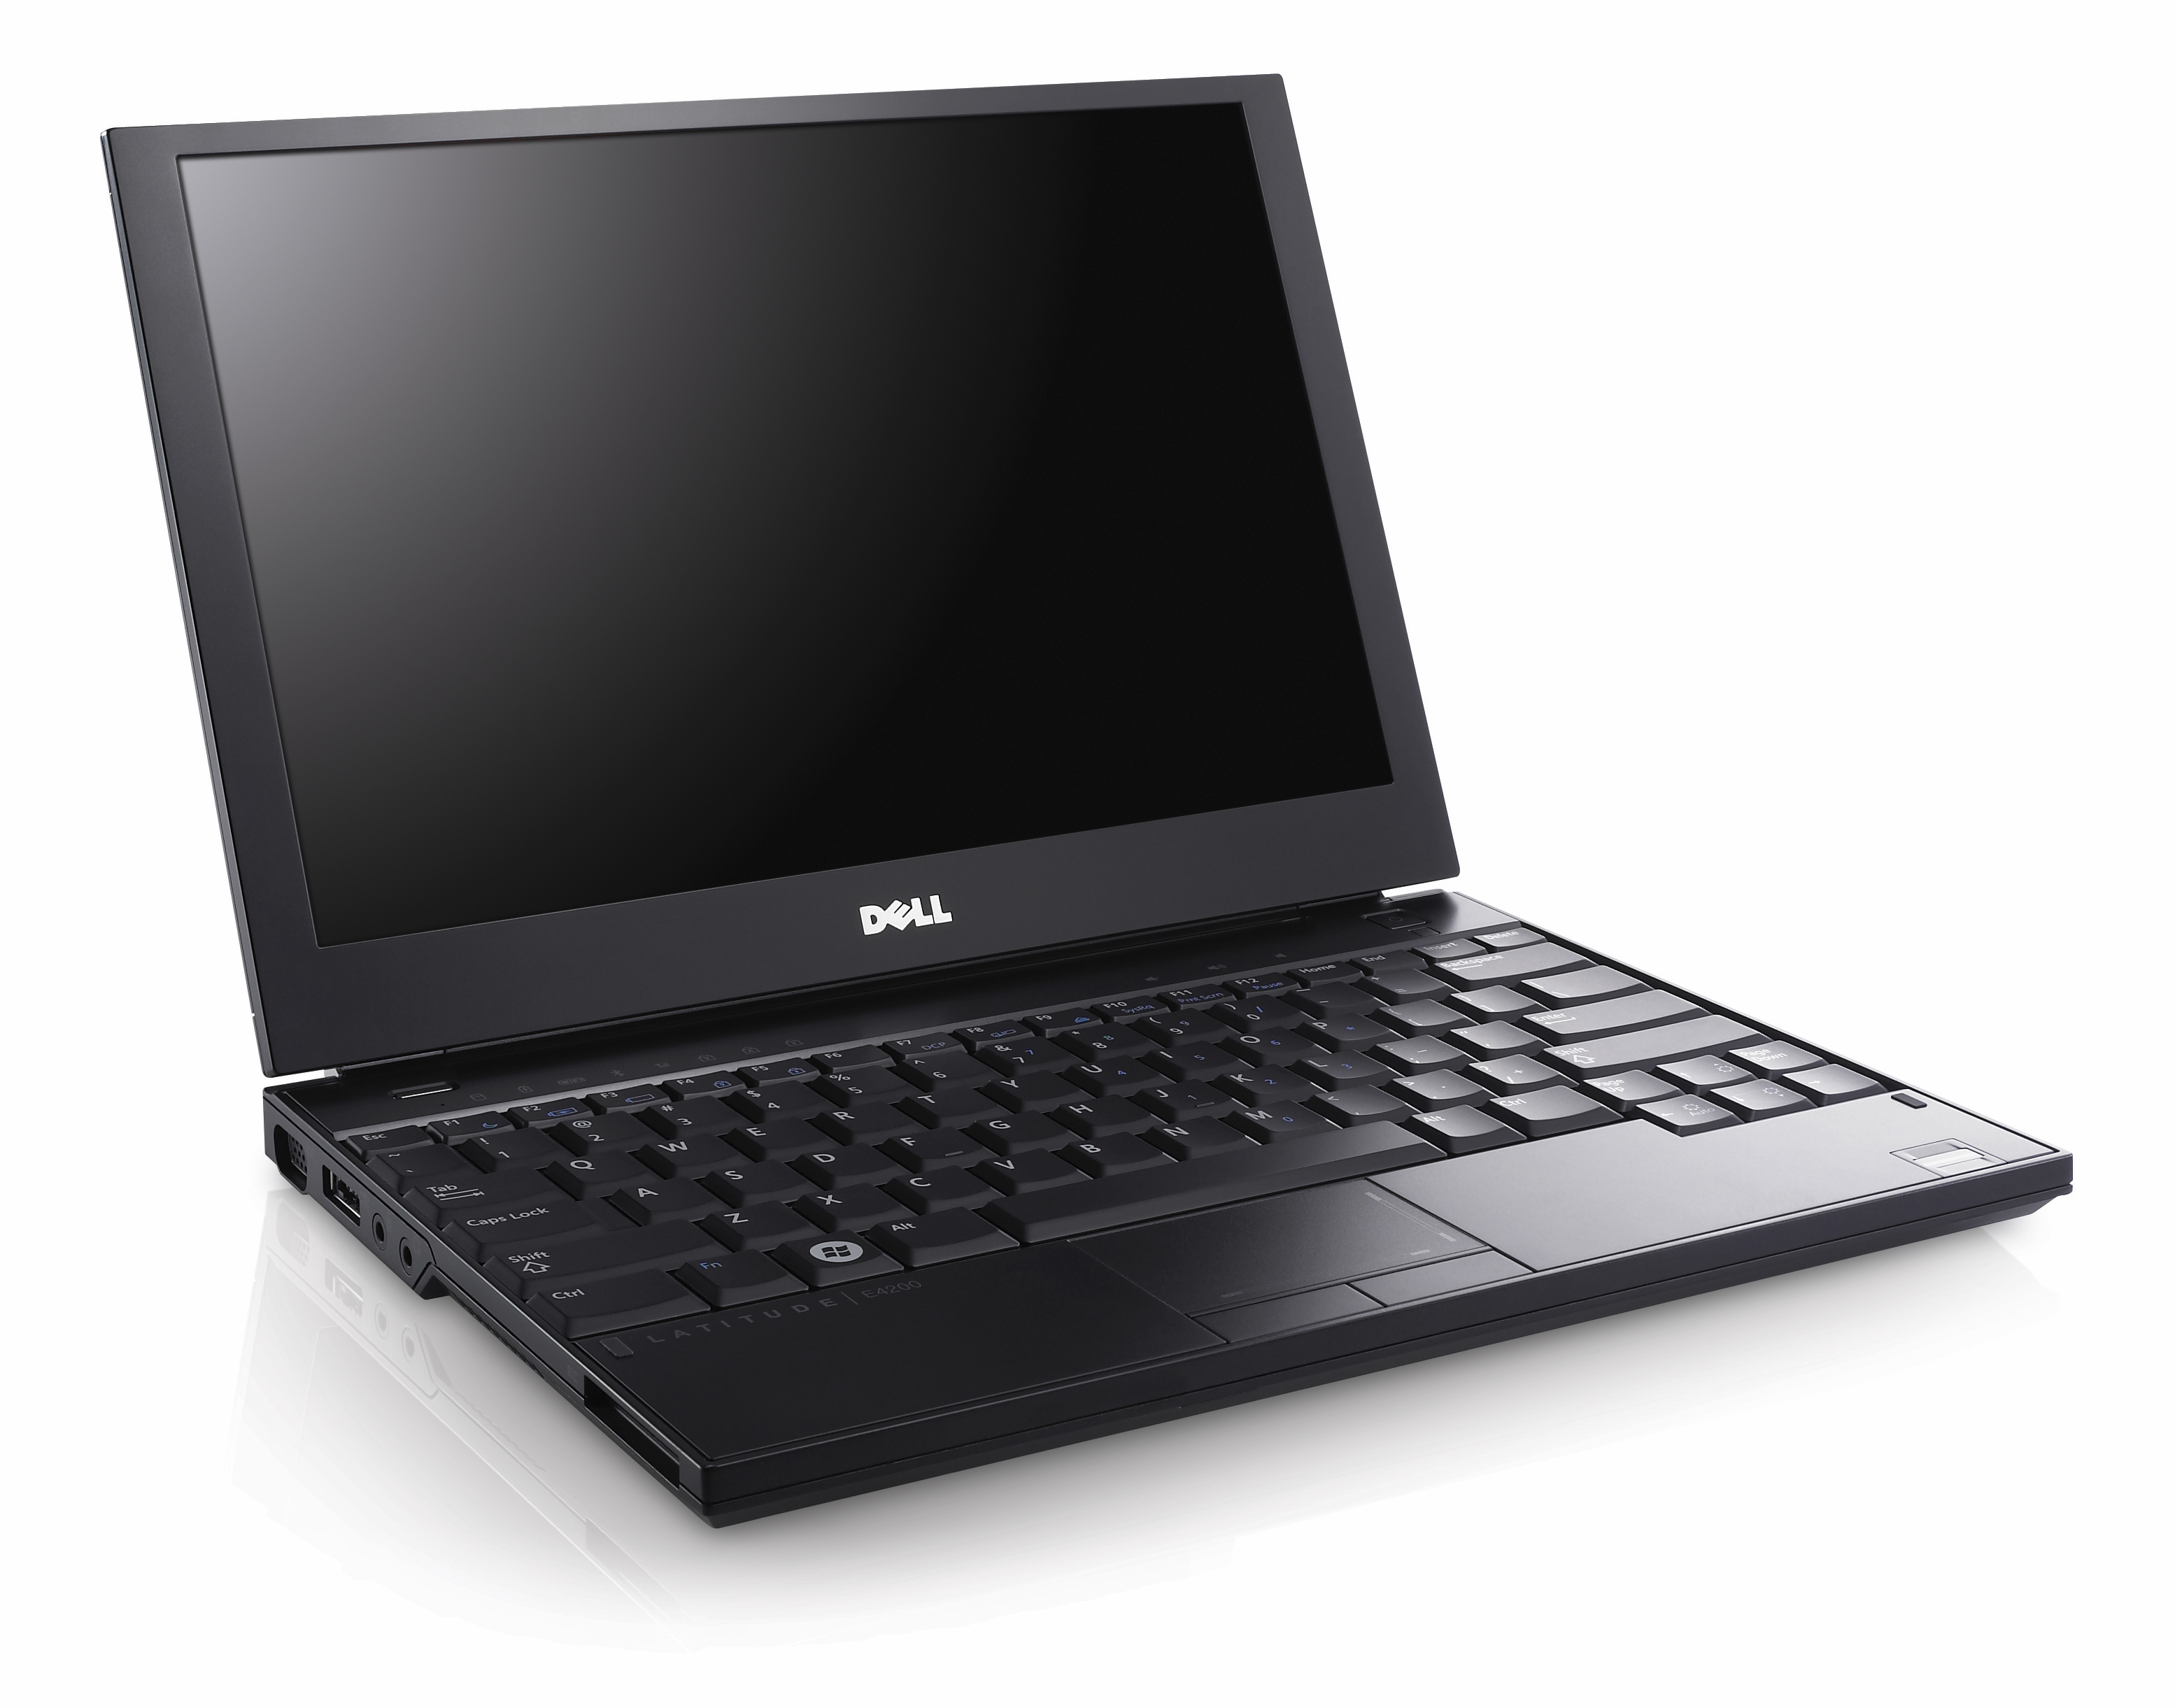 Dell Latitude E6500 Laptop